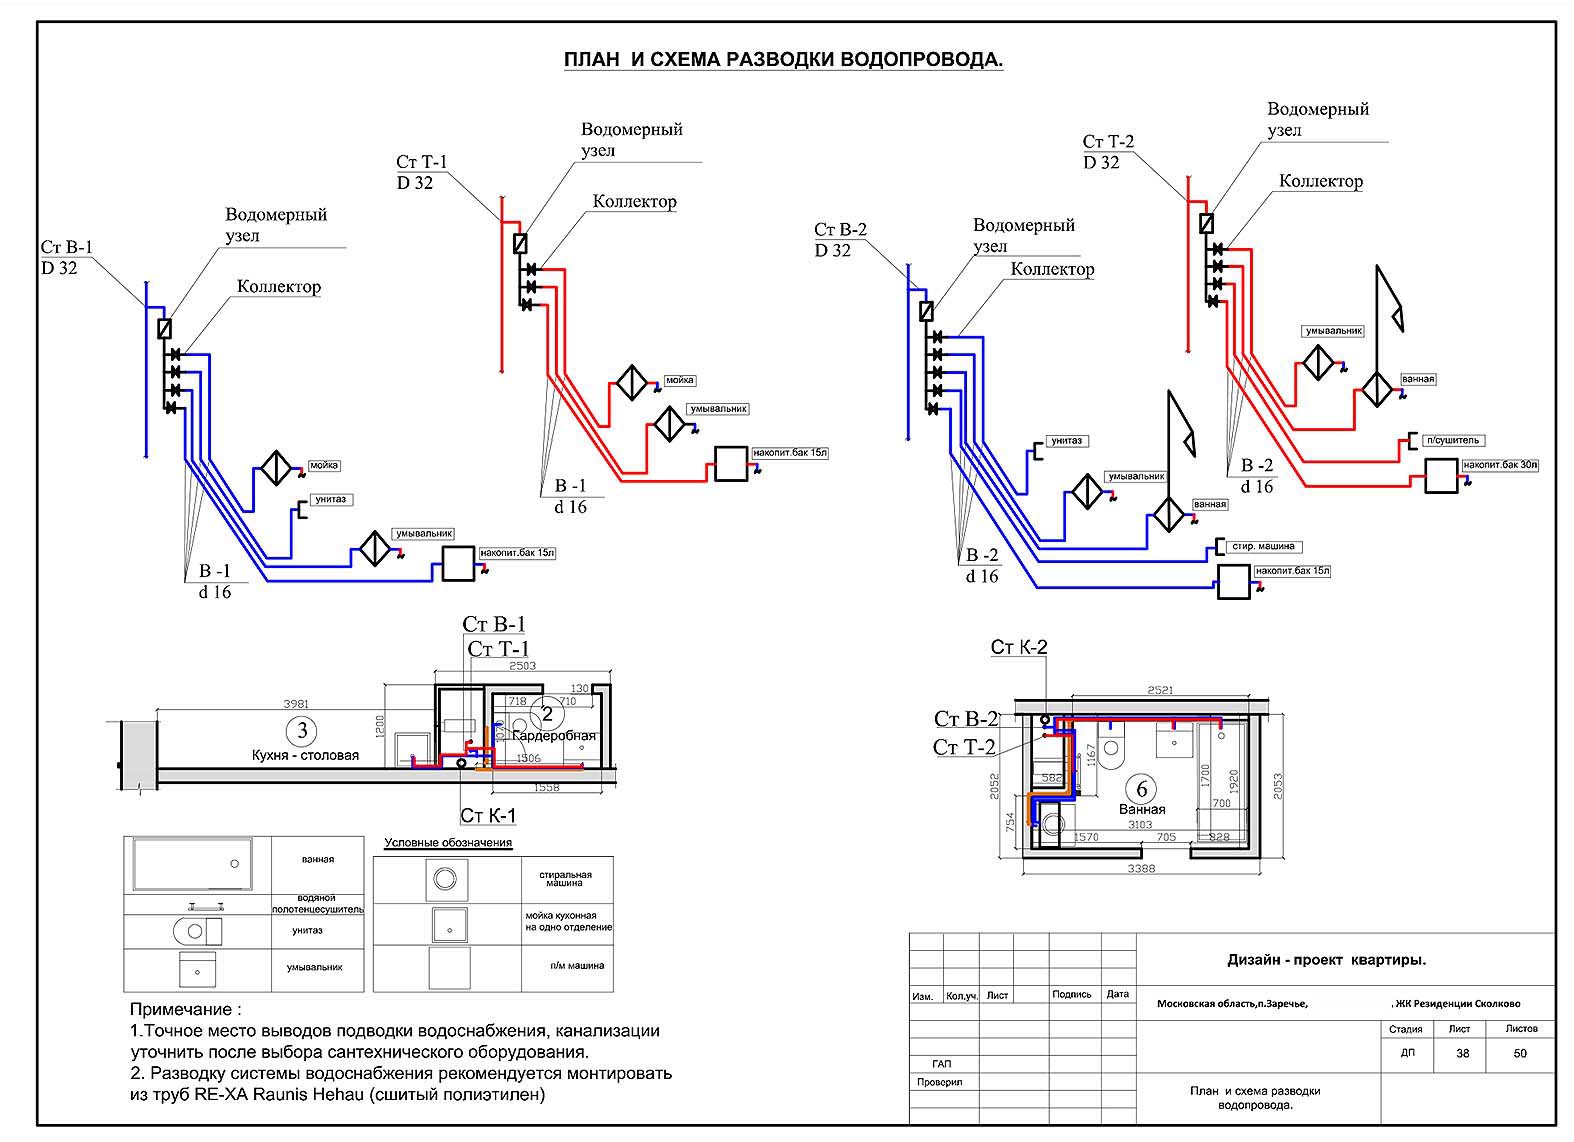 Проект двухкомнатной квартиры. Лист38 План и схема разводки водопровода